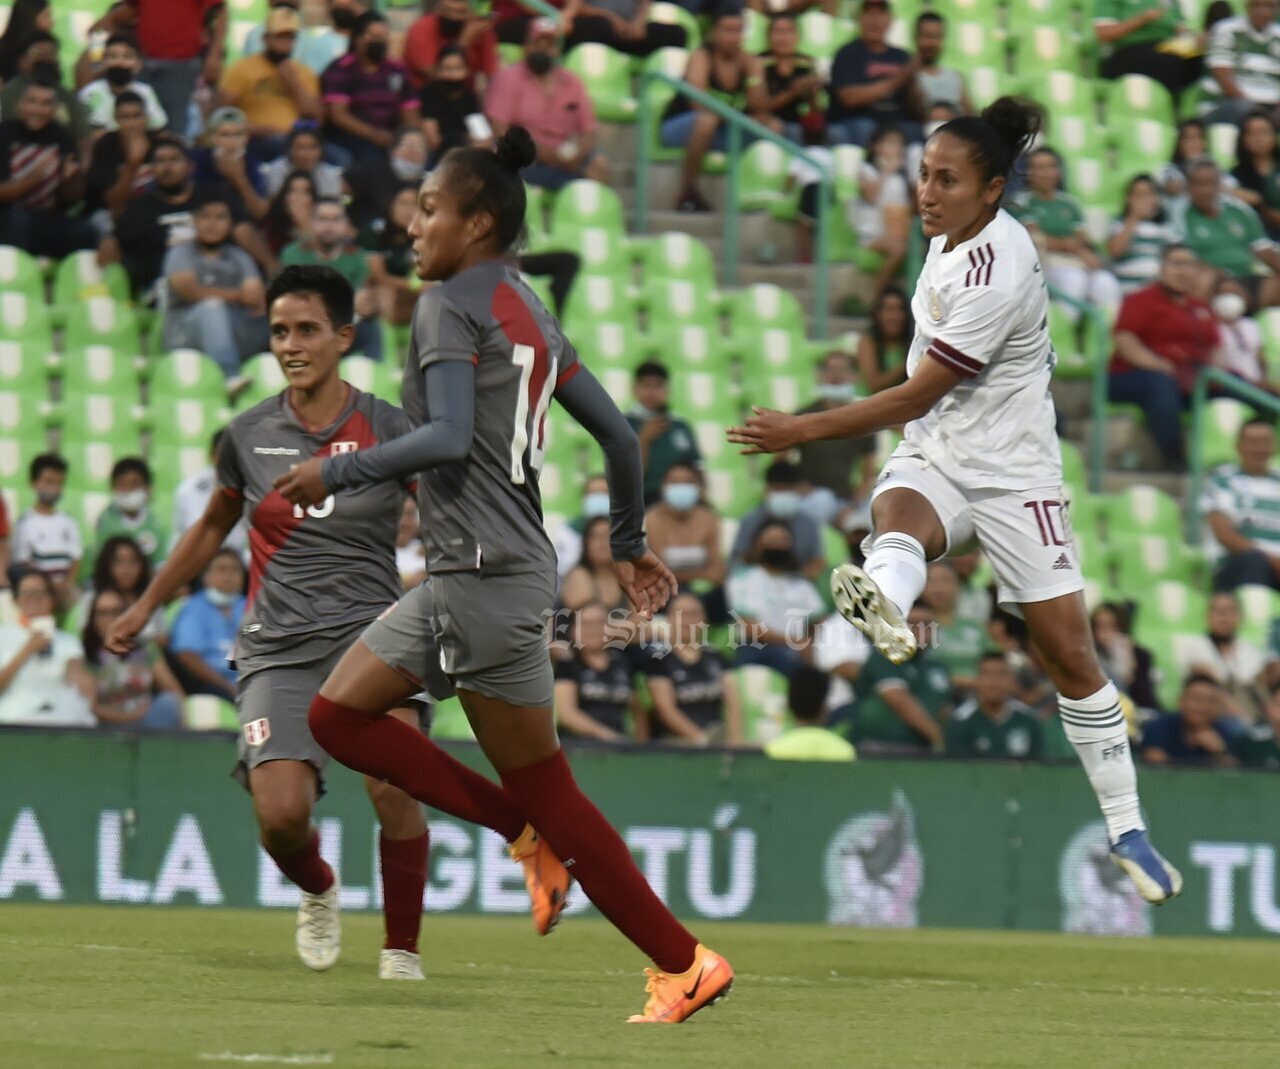 México Femenil golea a Perú durante amistoso en Torreón